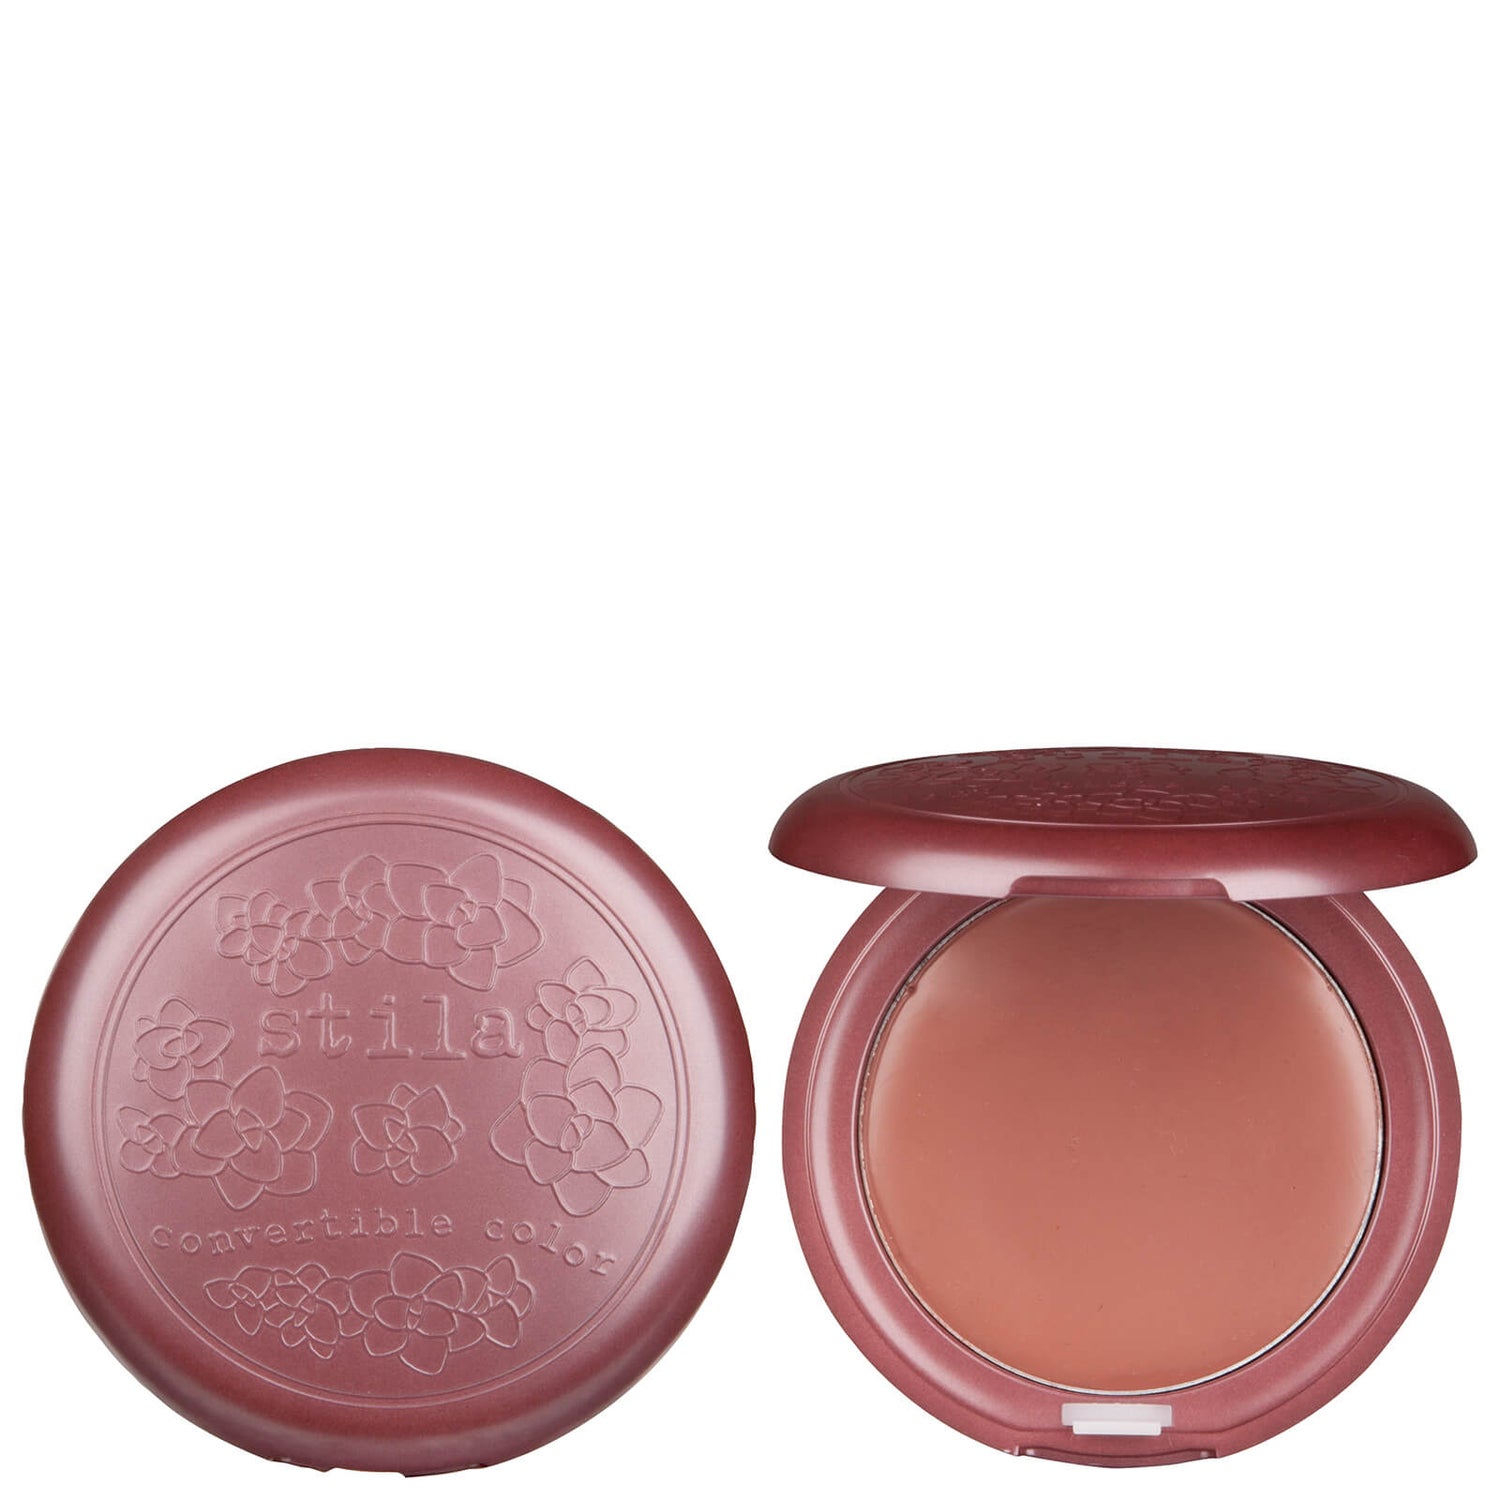 Stila Convertible Color Dual Lip and Cheek Cream - Magnolia 4.25g